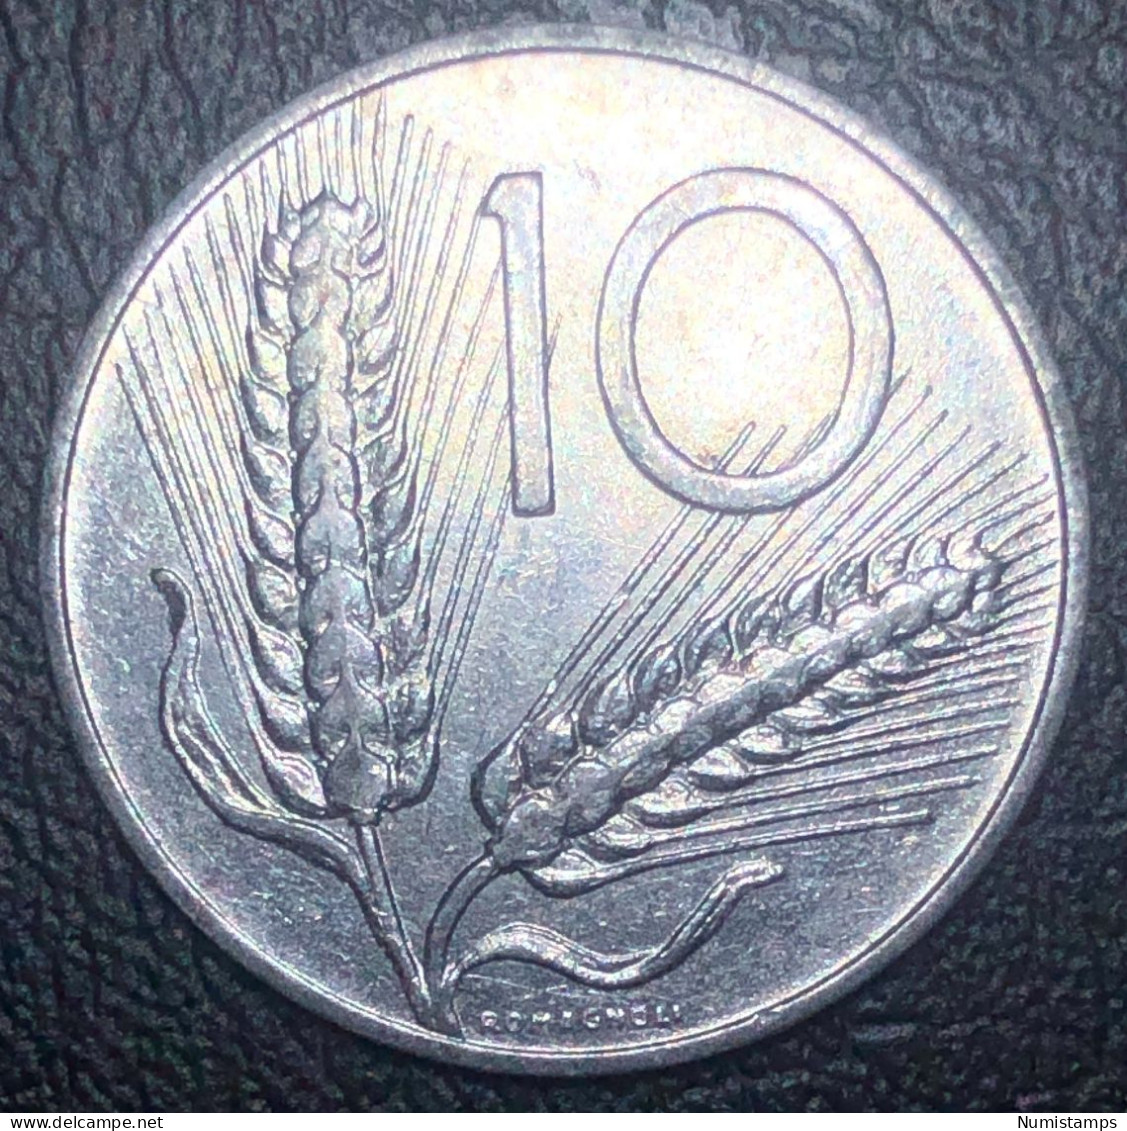 Italia 10 Lire, 1979 - 10 Liras